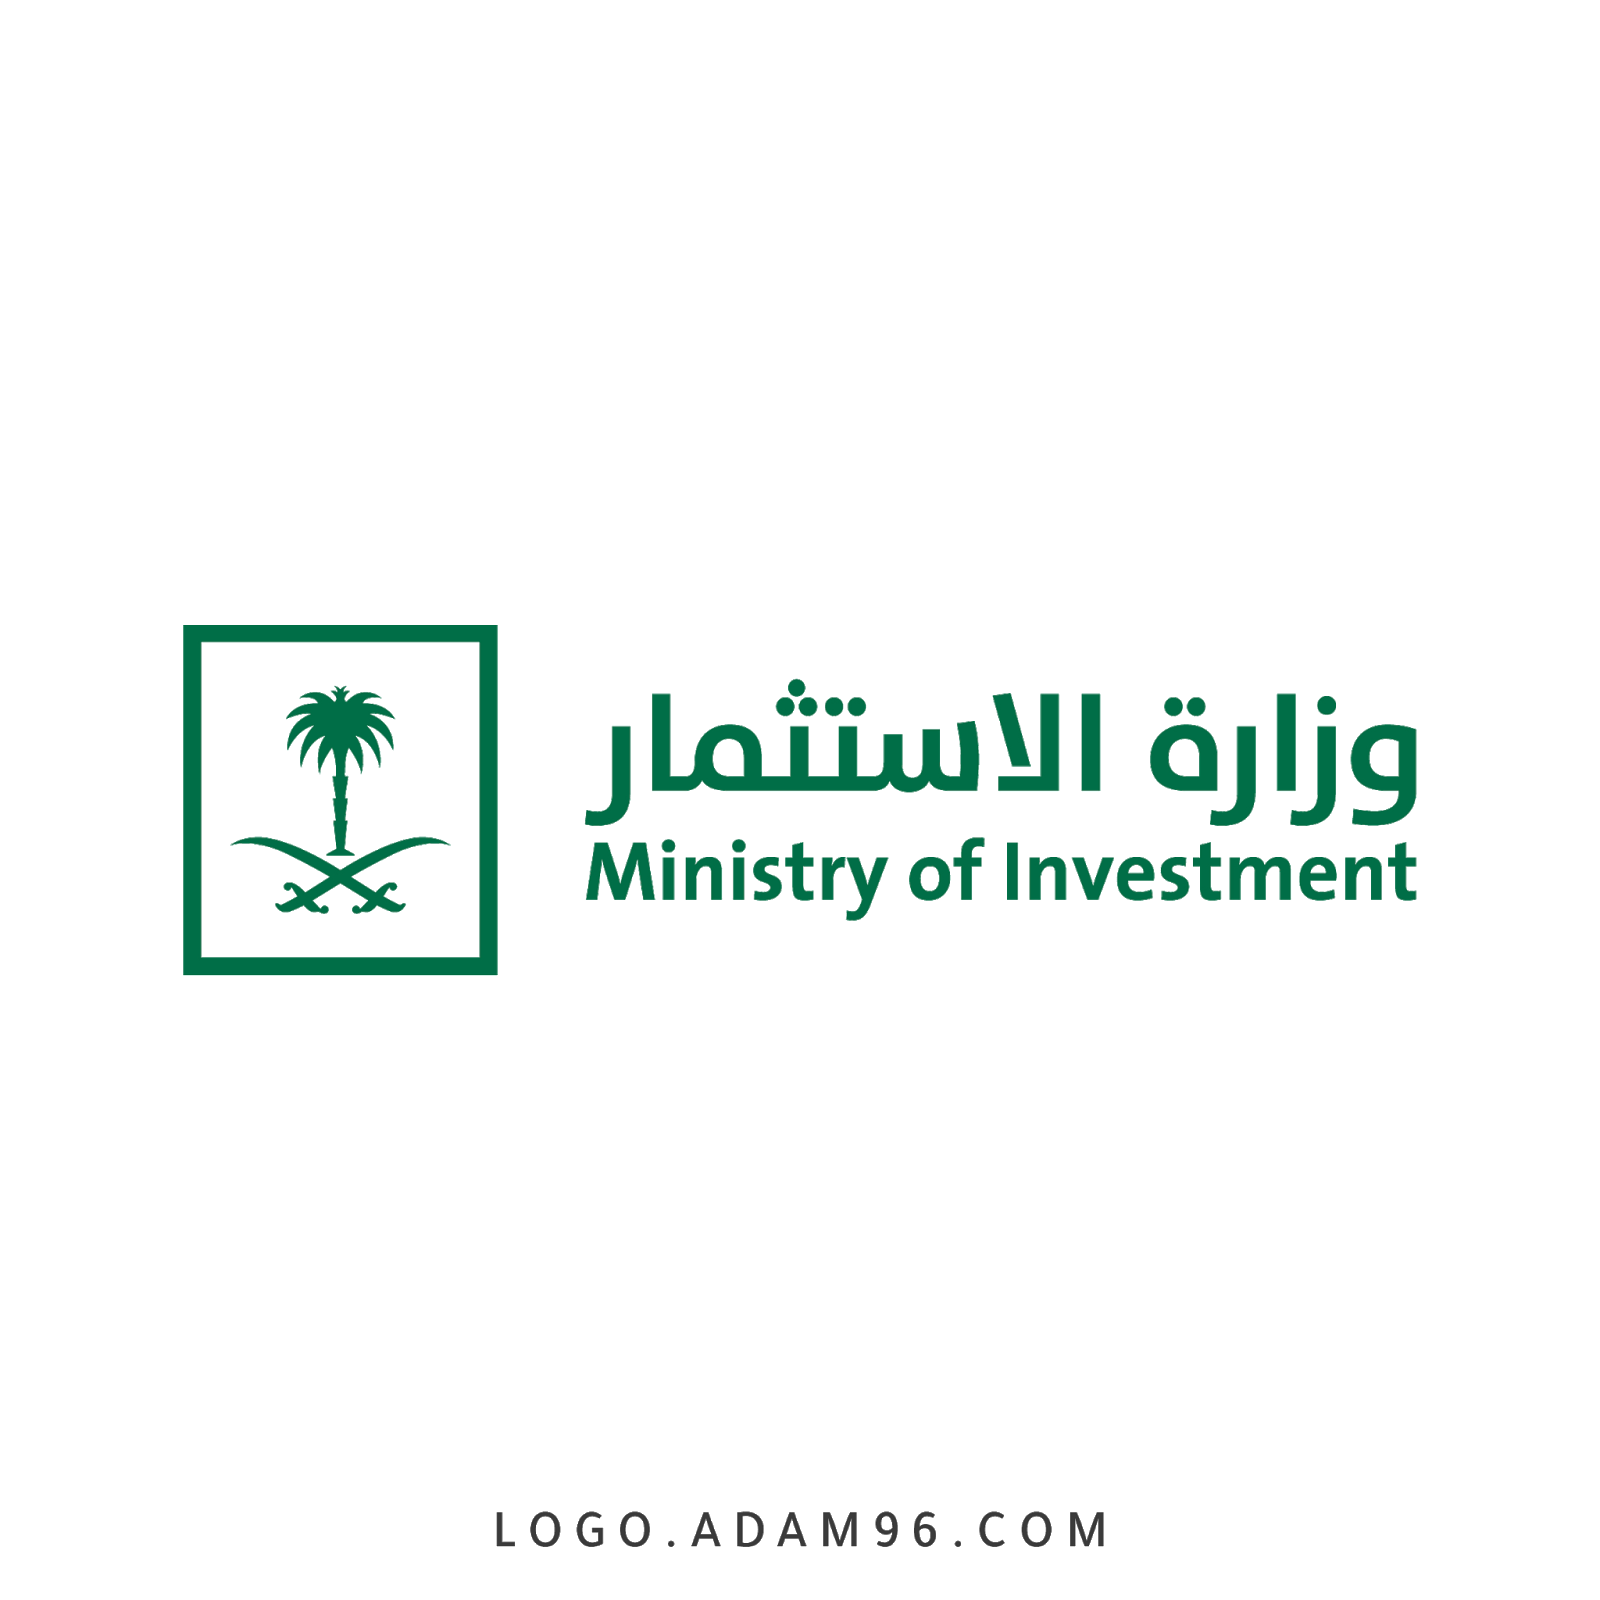 تحميل شعار الرسمي وزارة الاستثمار المملكة العربية السعودية PNG شعارات